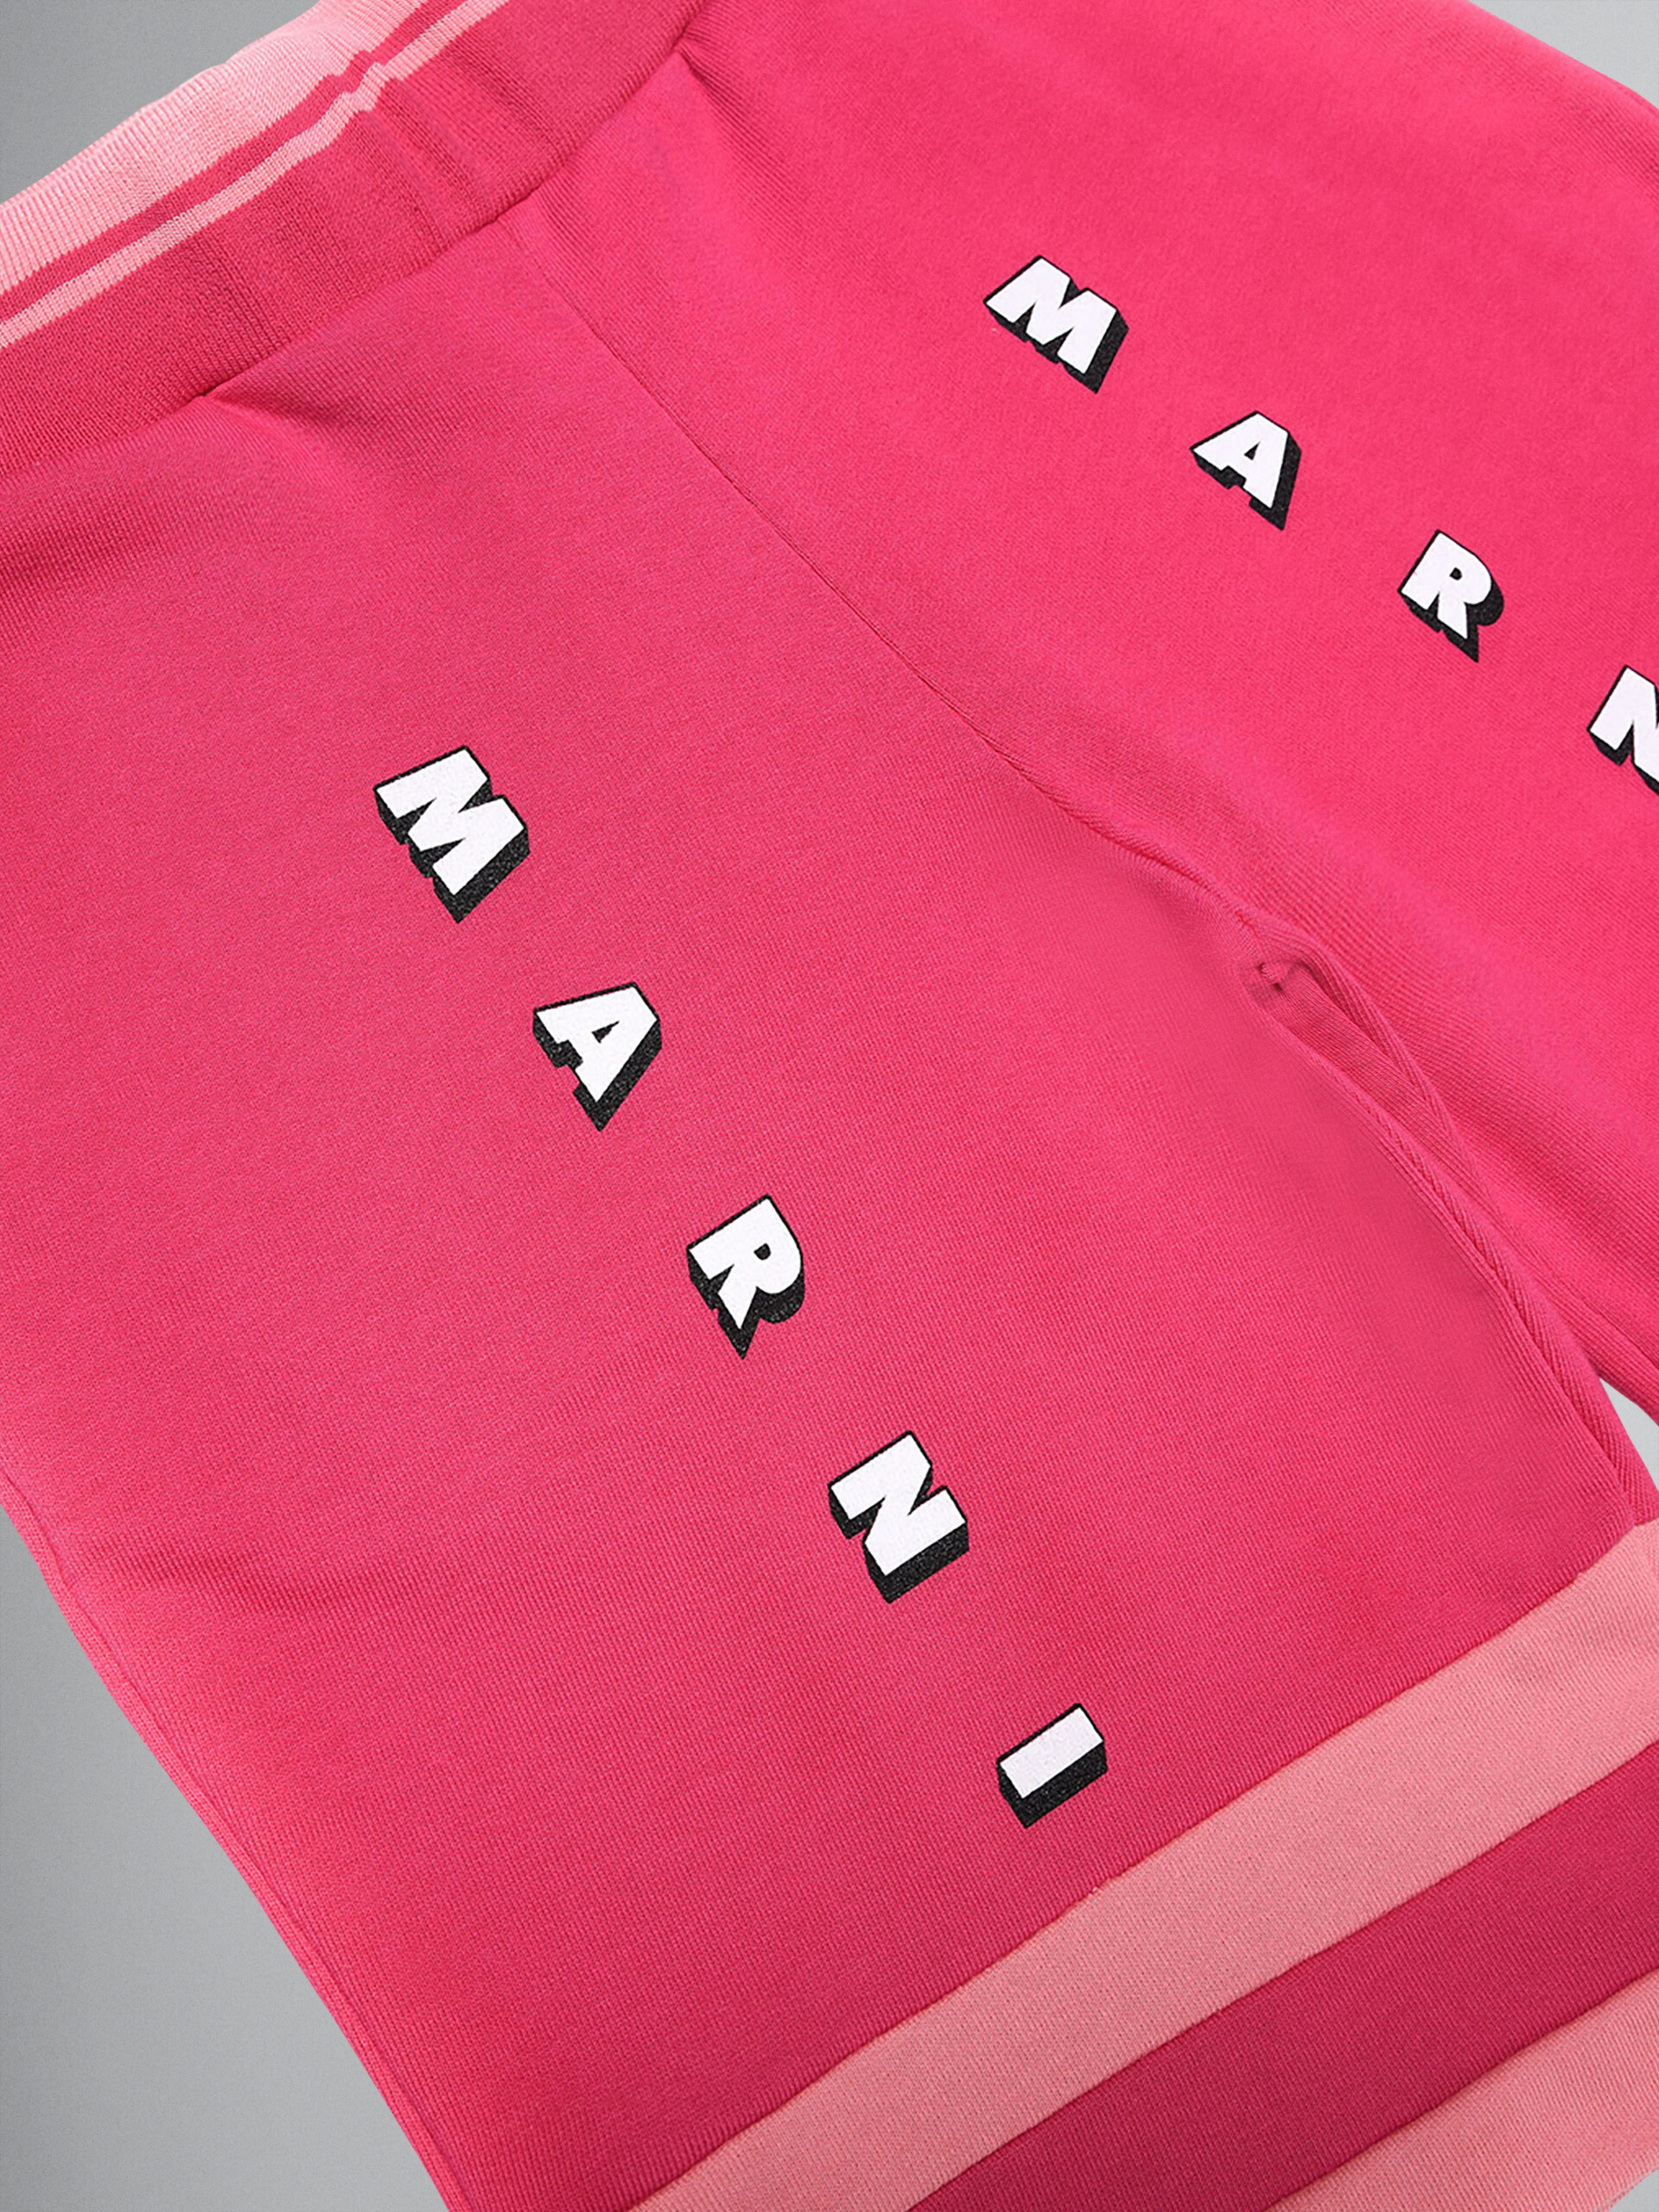 Colour-block pink sweatshirt cotton short track pants - Pants - Image 3